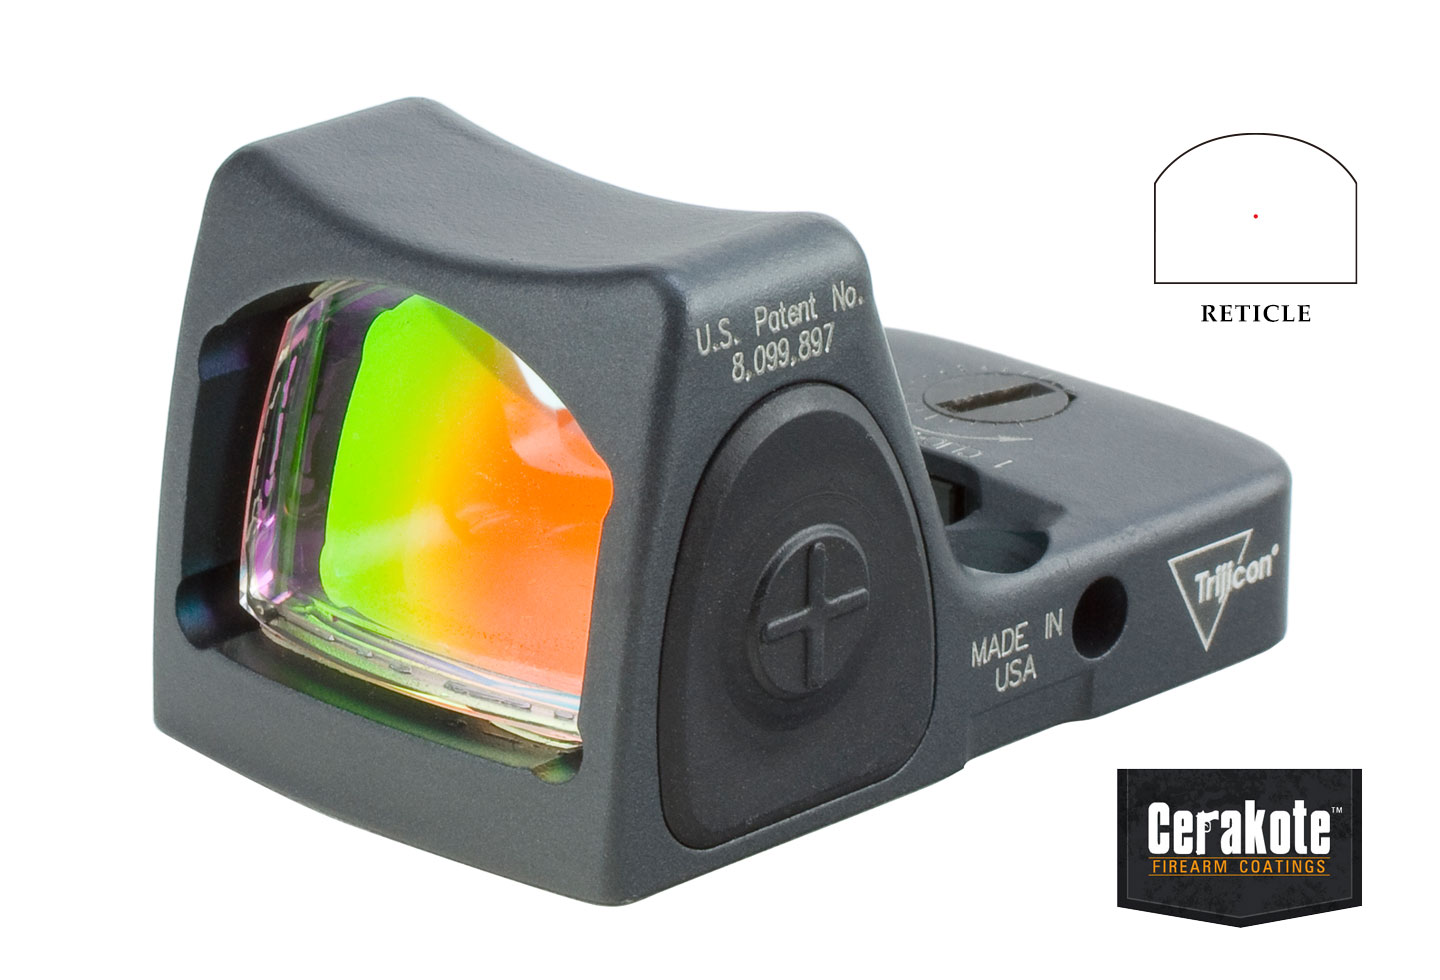 RMR Type 2 Adjustable LED Reflex Sight Cerakote